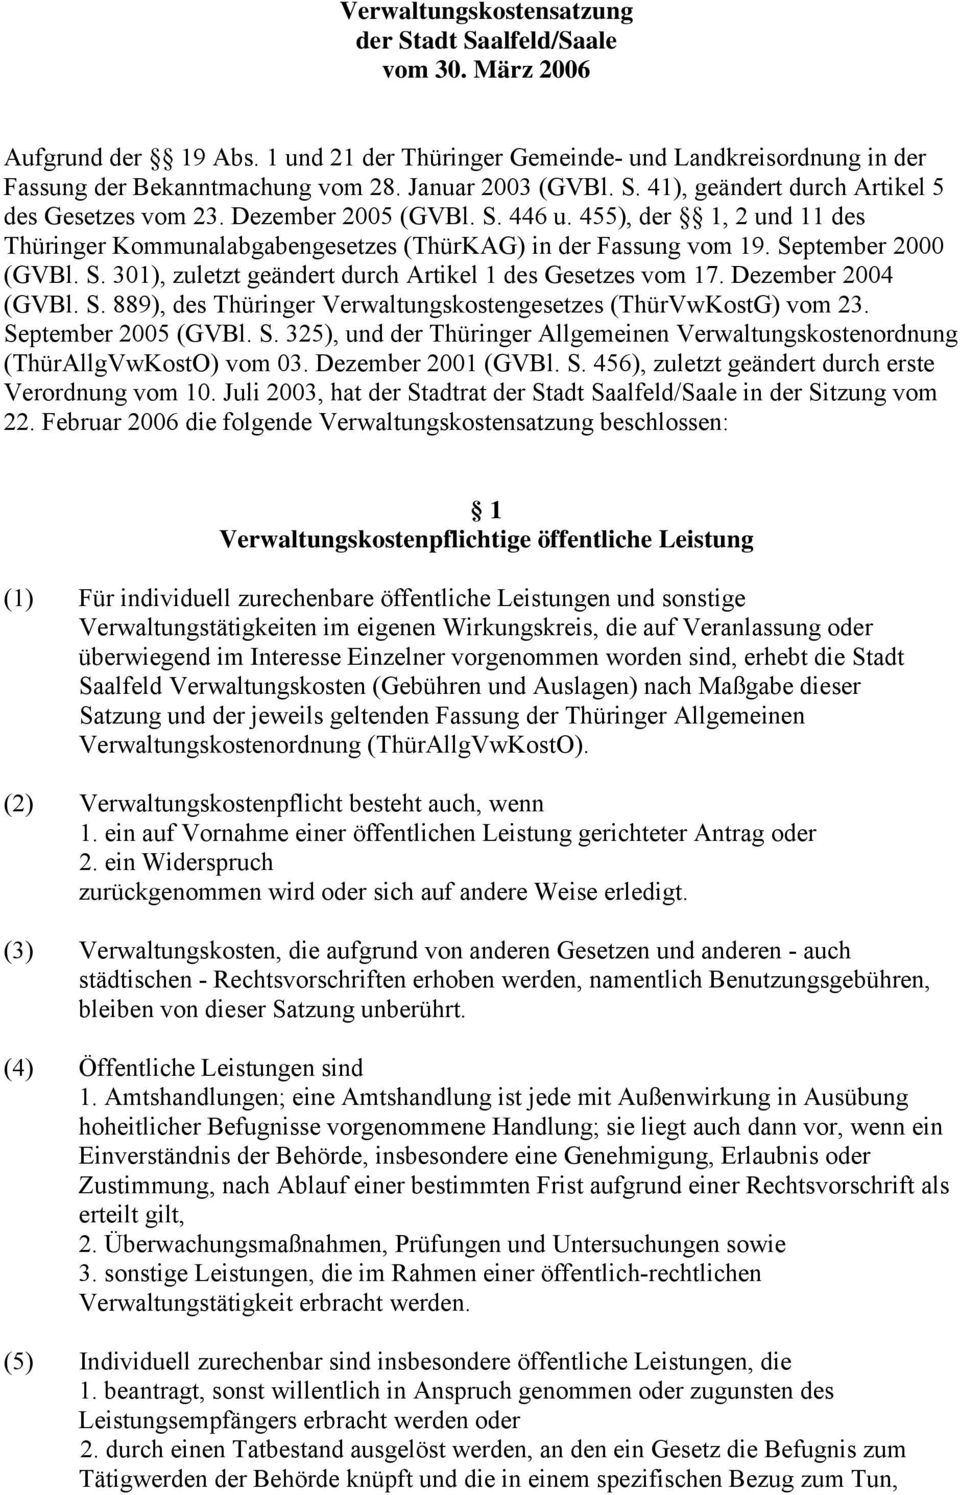 September 2000 (GVBl. S. 301), zuletzt geändert durch Artikel 1 des Gesetzes vom 17. Dezember 2004 (GVBl. S. 889), des Thüringer Verwaltungskostengesetzes (ThürVwKostG) vom 23. September 2005 (GVBl.